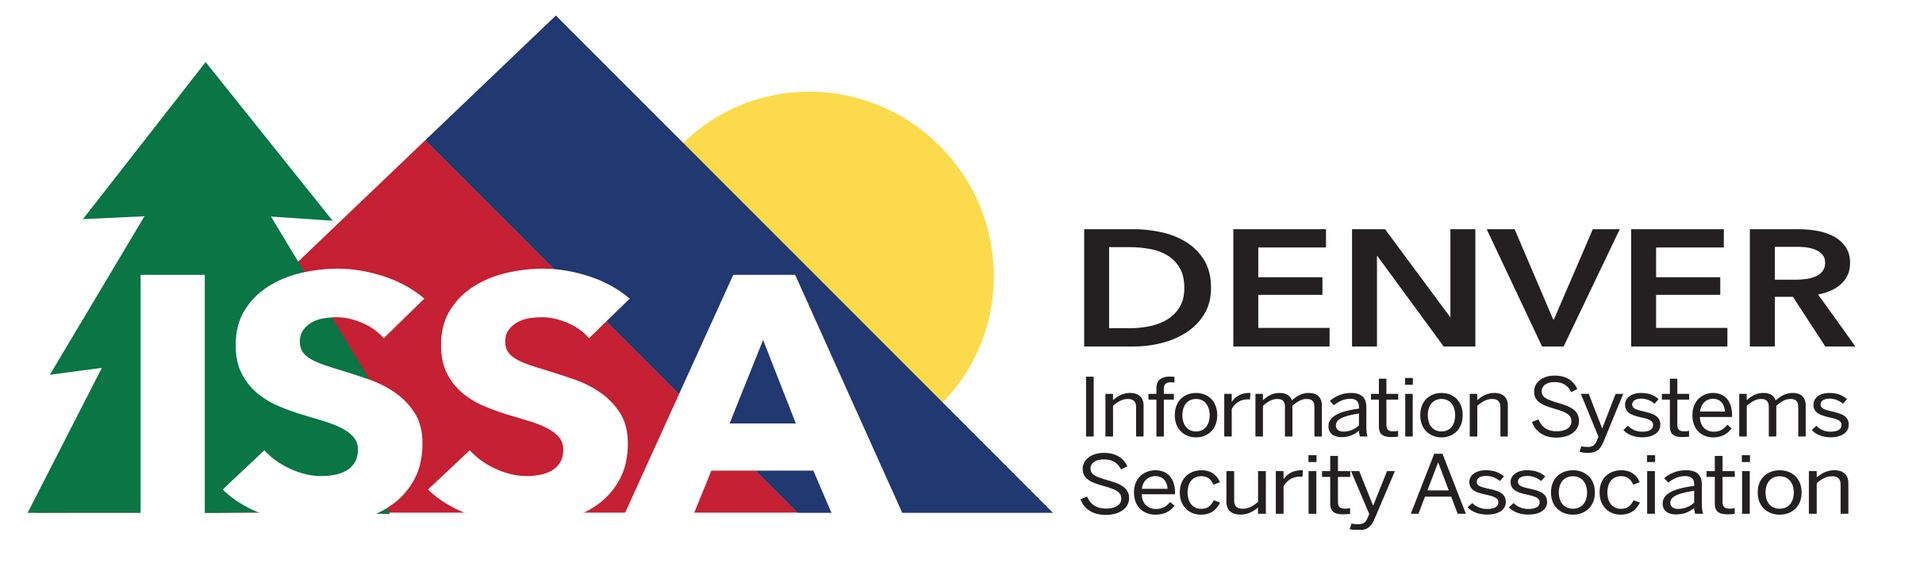 Denver ISSA Logo